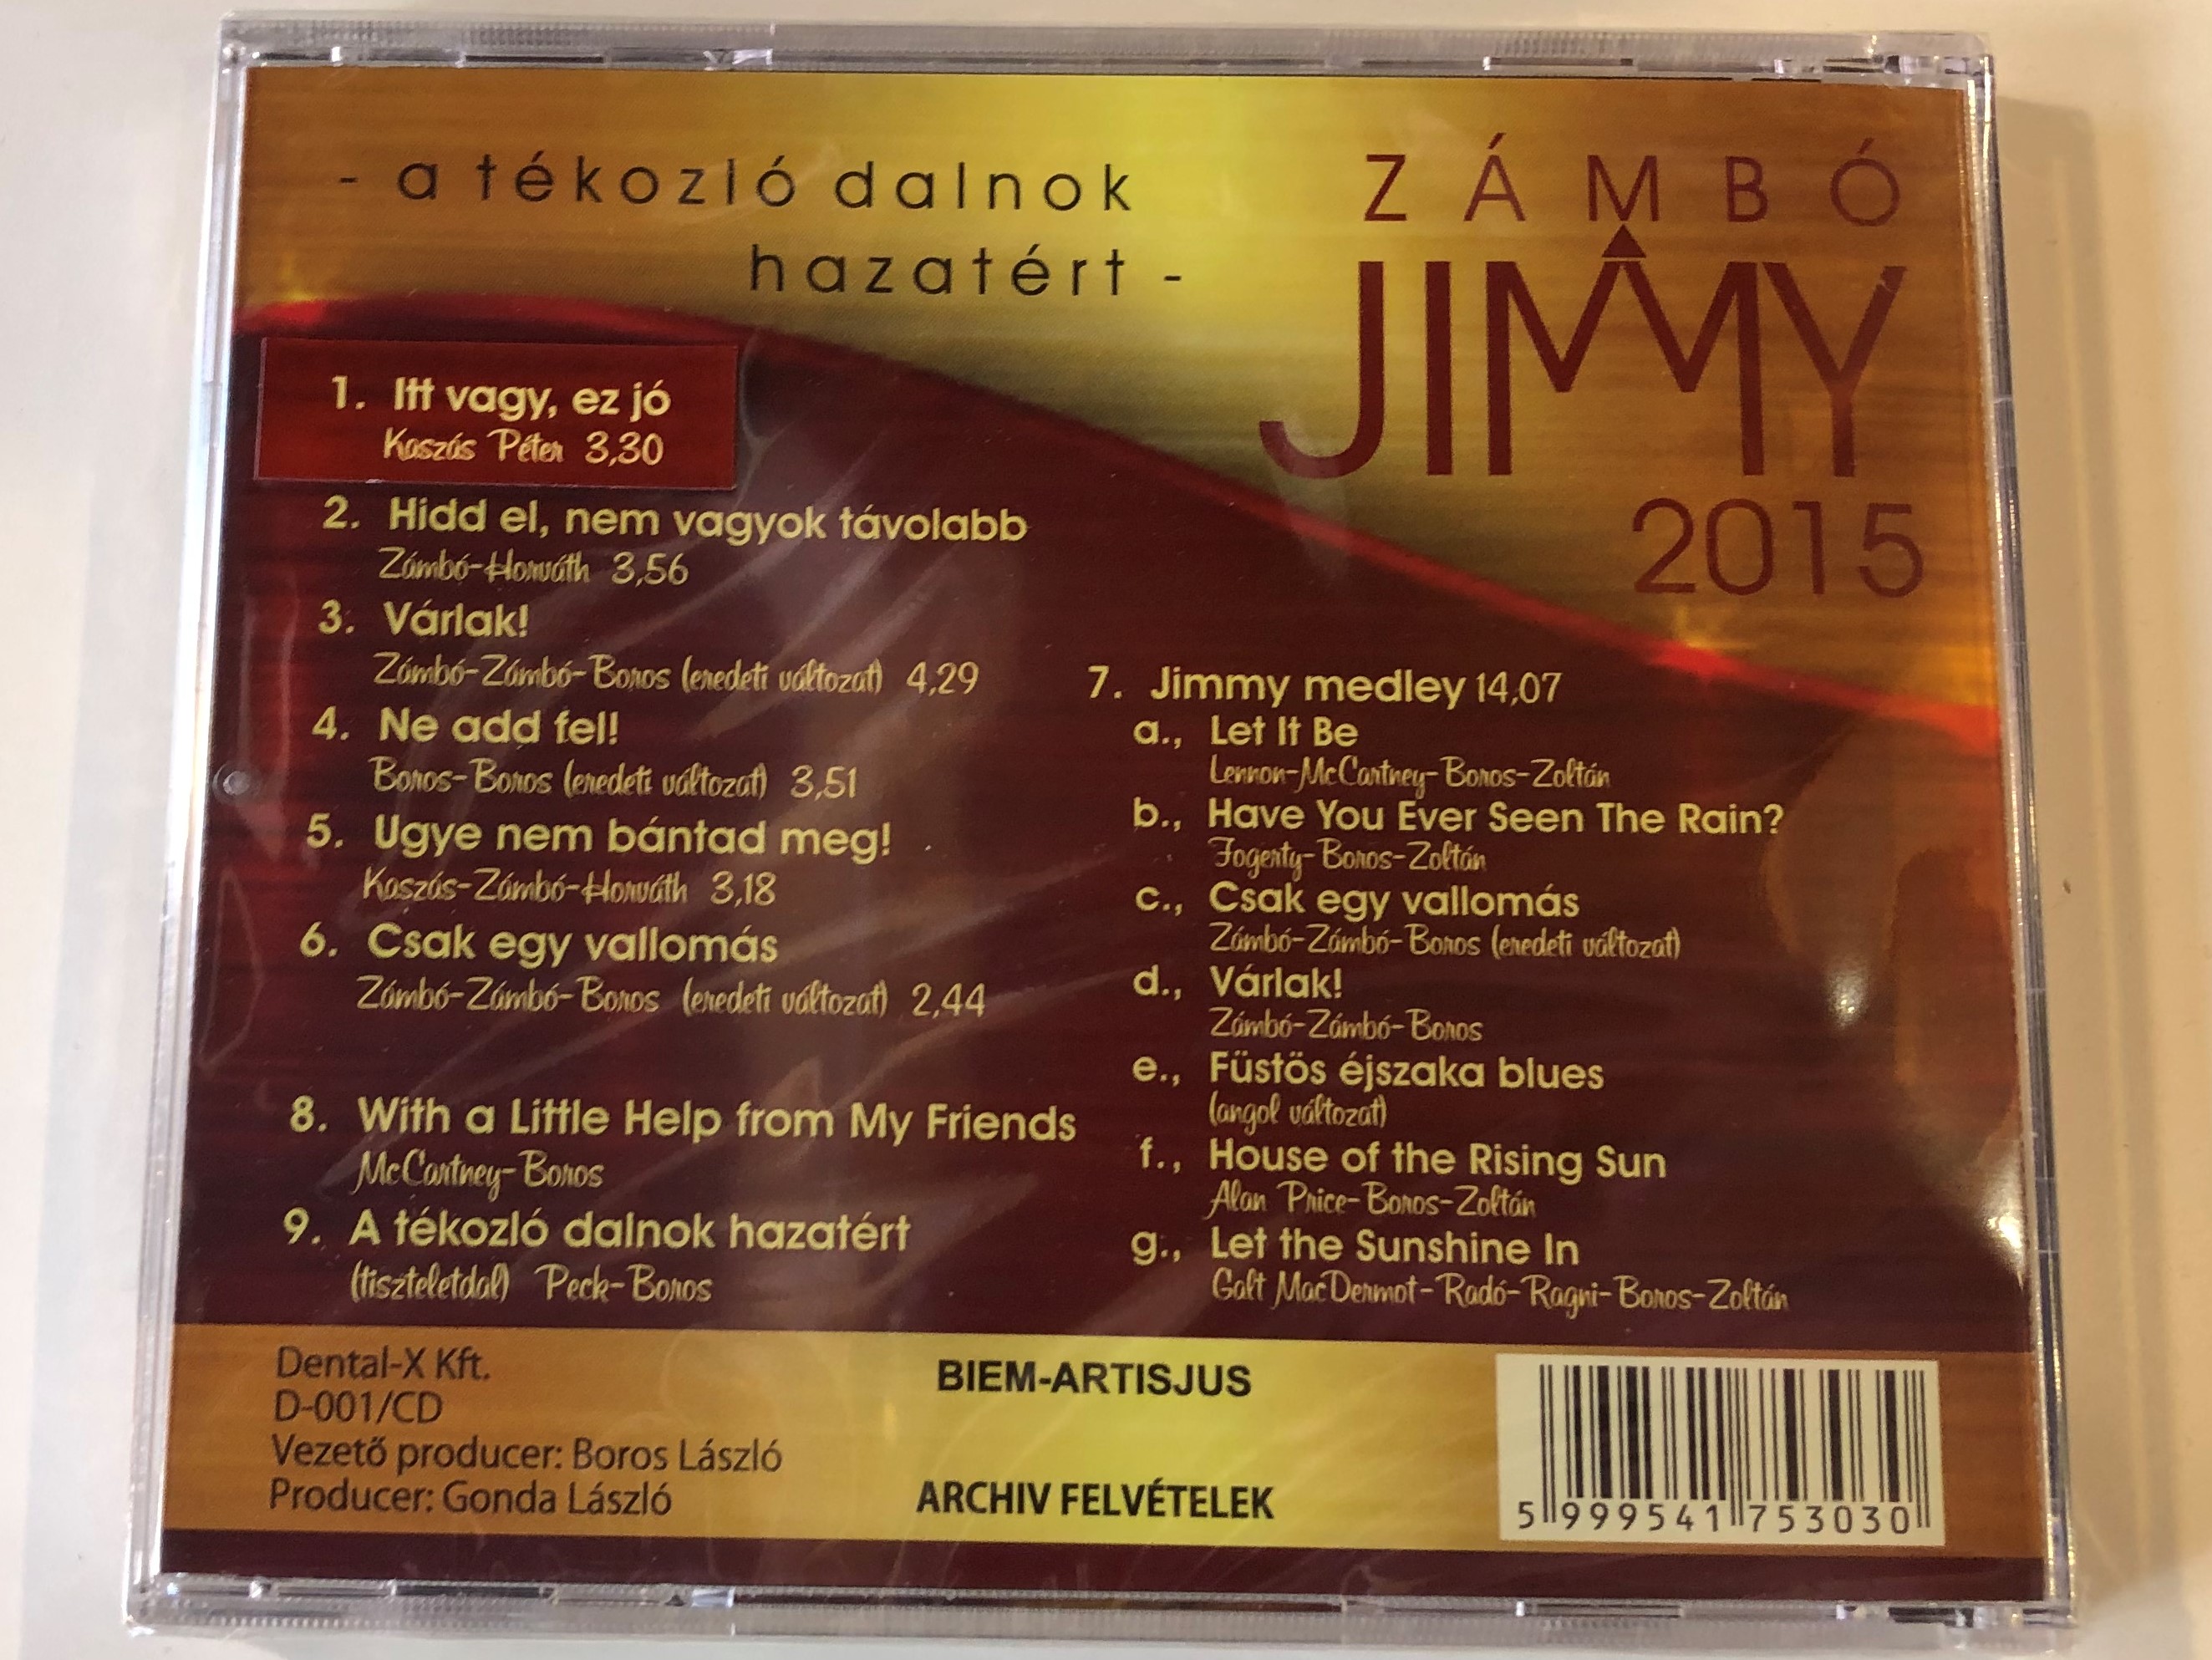 z-mb-jimmy-2015-3-soha-nem-hallott-dallal-a-t-kozl-dalnok-hazat-rt-dental-x-kft.-audio-cd-2015-d-001cd-2-.jpg